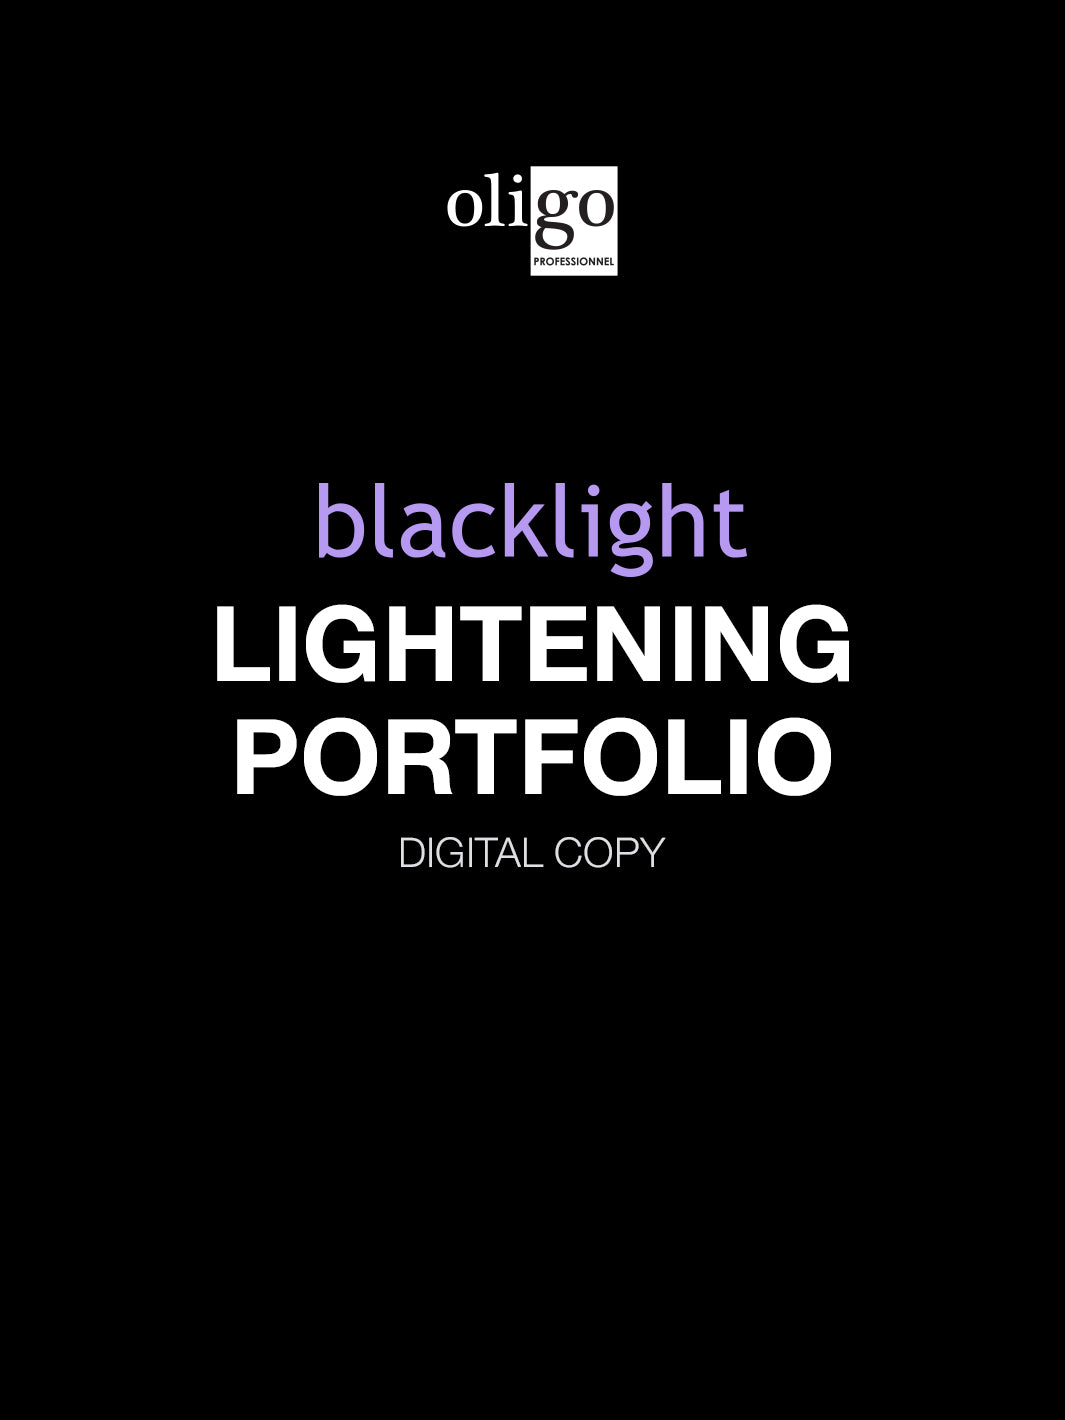 Blacklight Lightening Portfolio (digital copy)